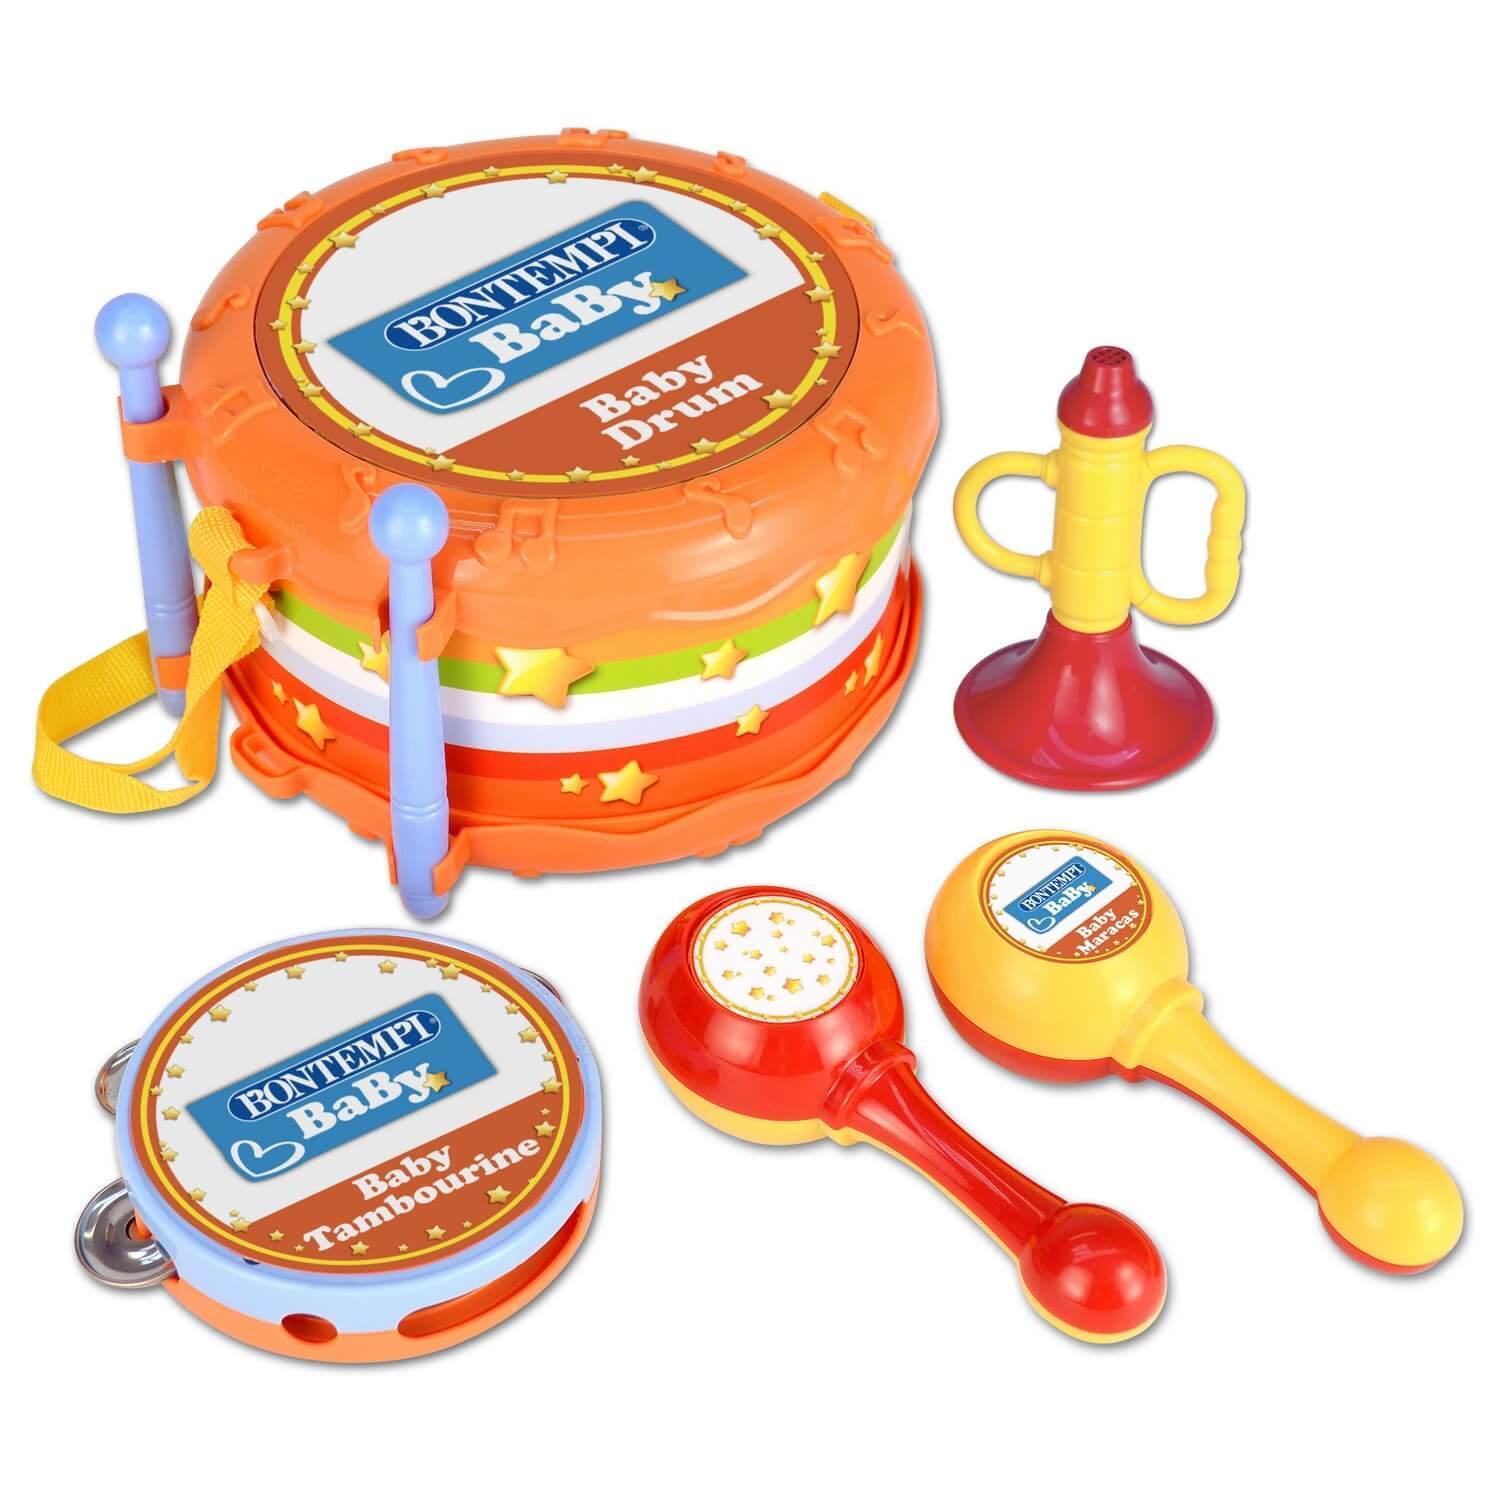 Tambour jouet Bontempi - Tambour pour enfants - Accessoire